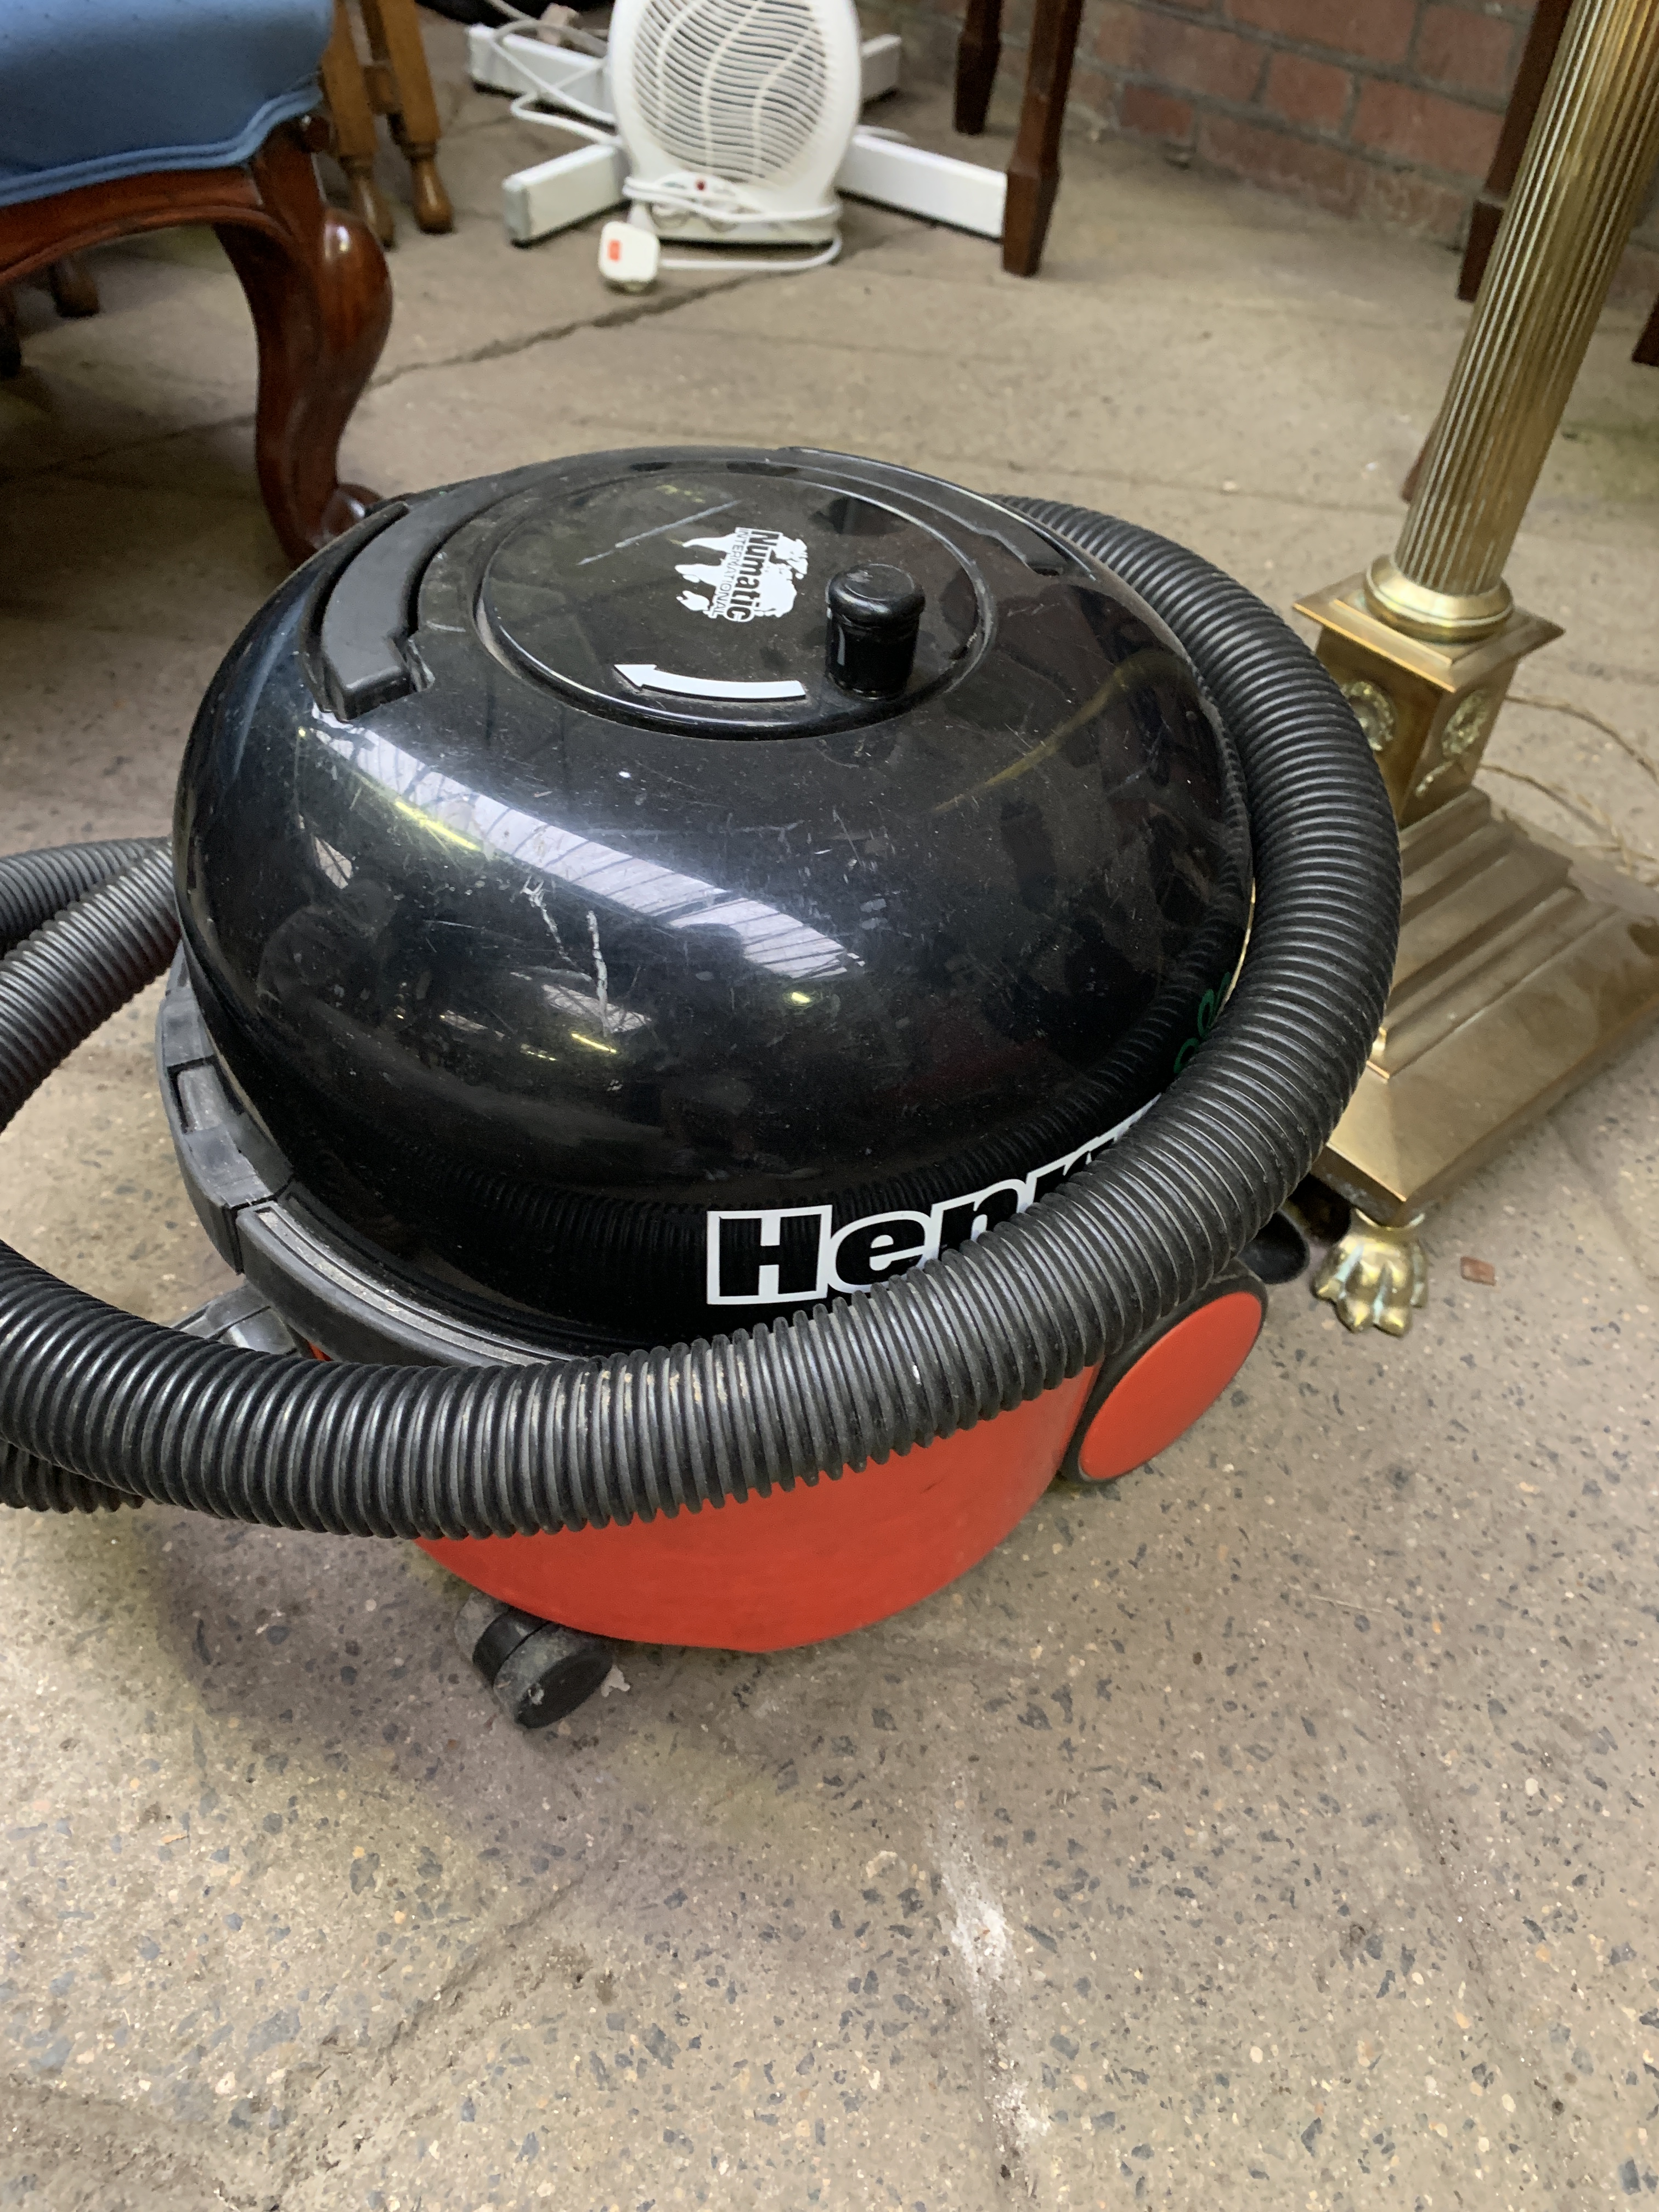 'Henry' vacuum cleaner in working order